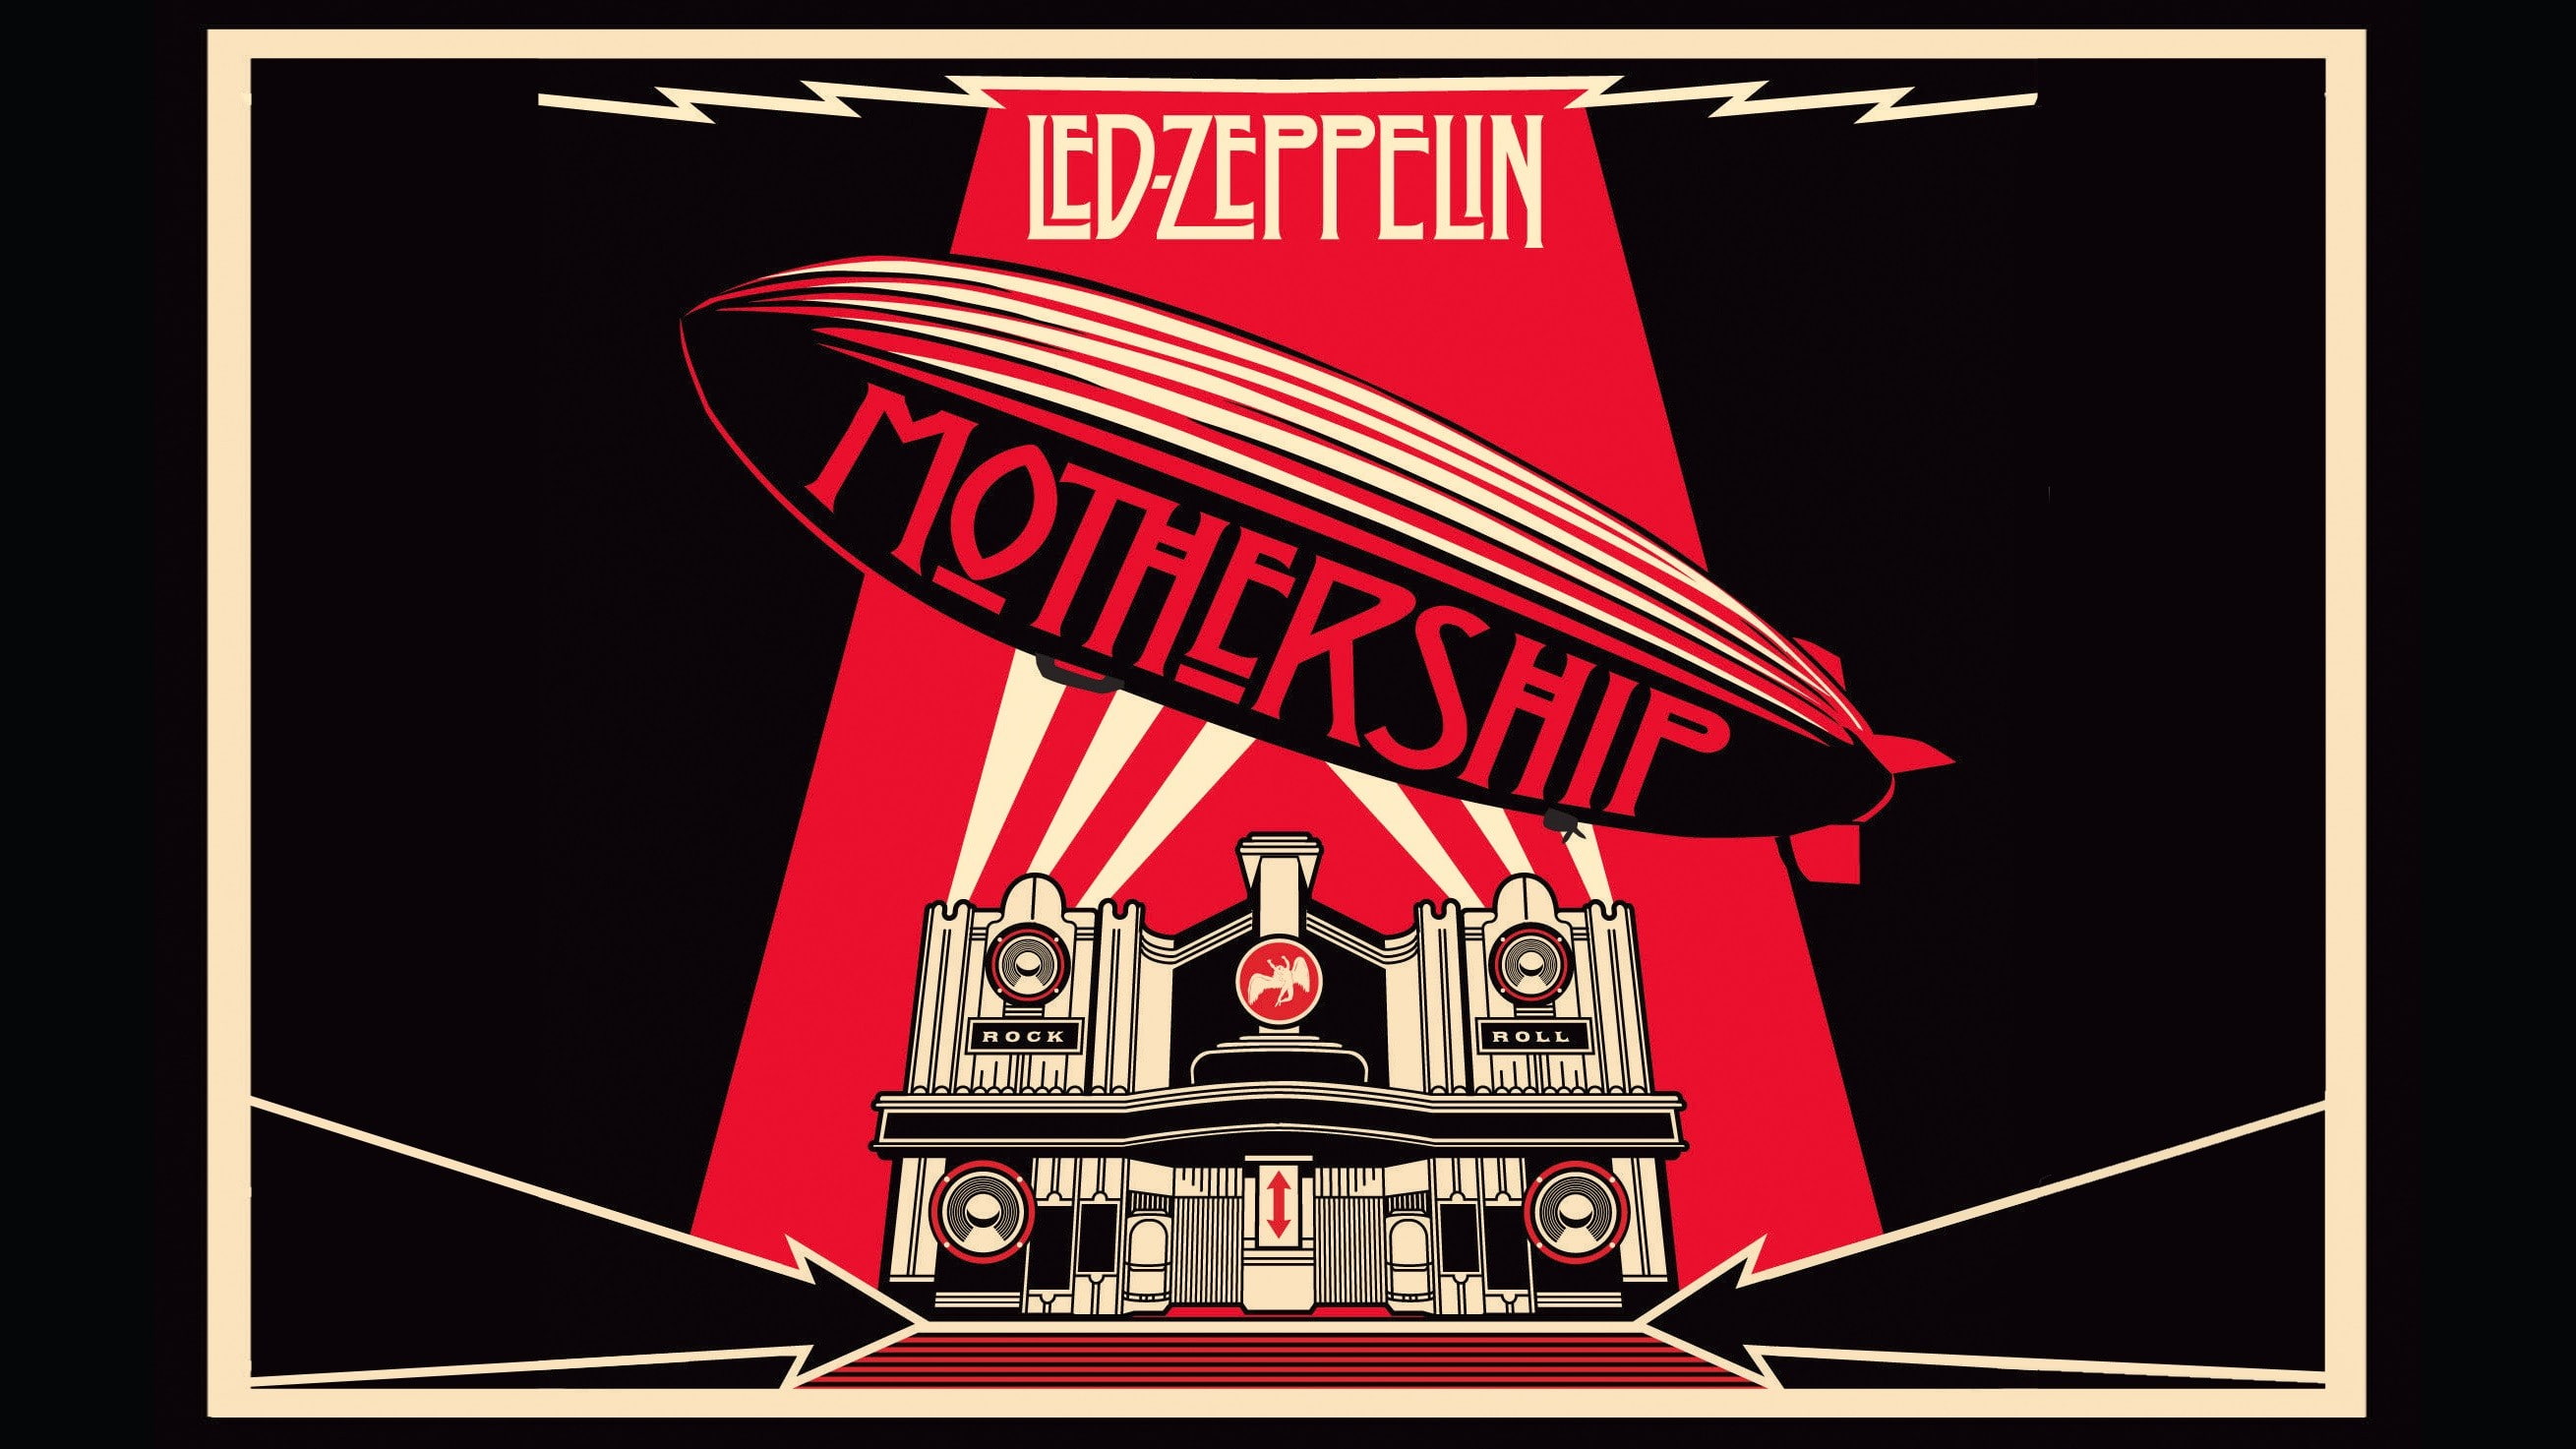 music, album covers, Led Zeppelin